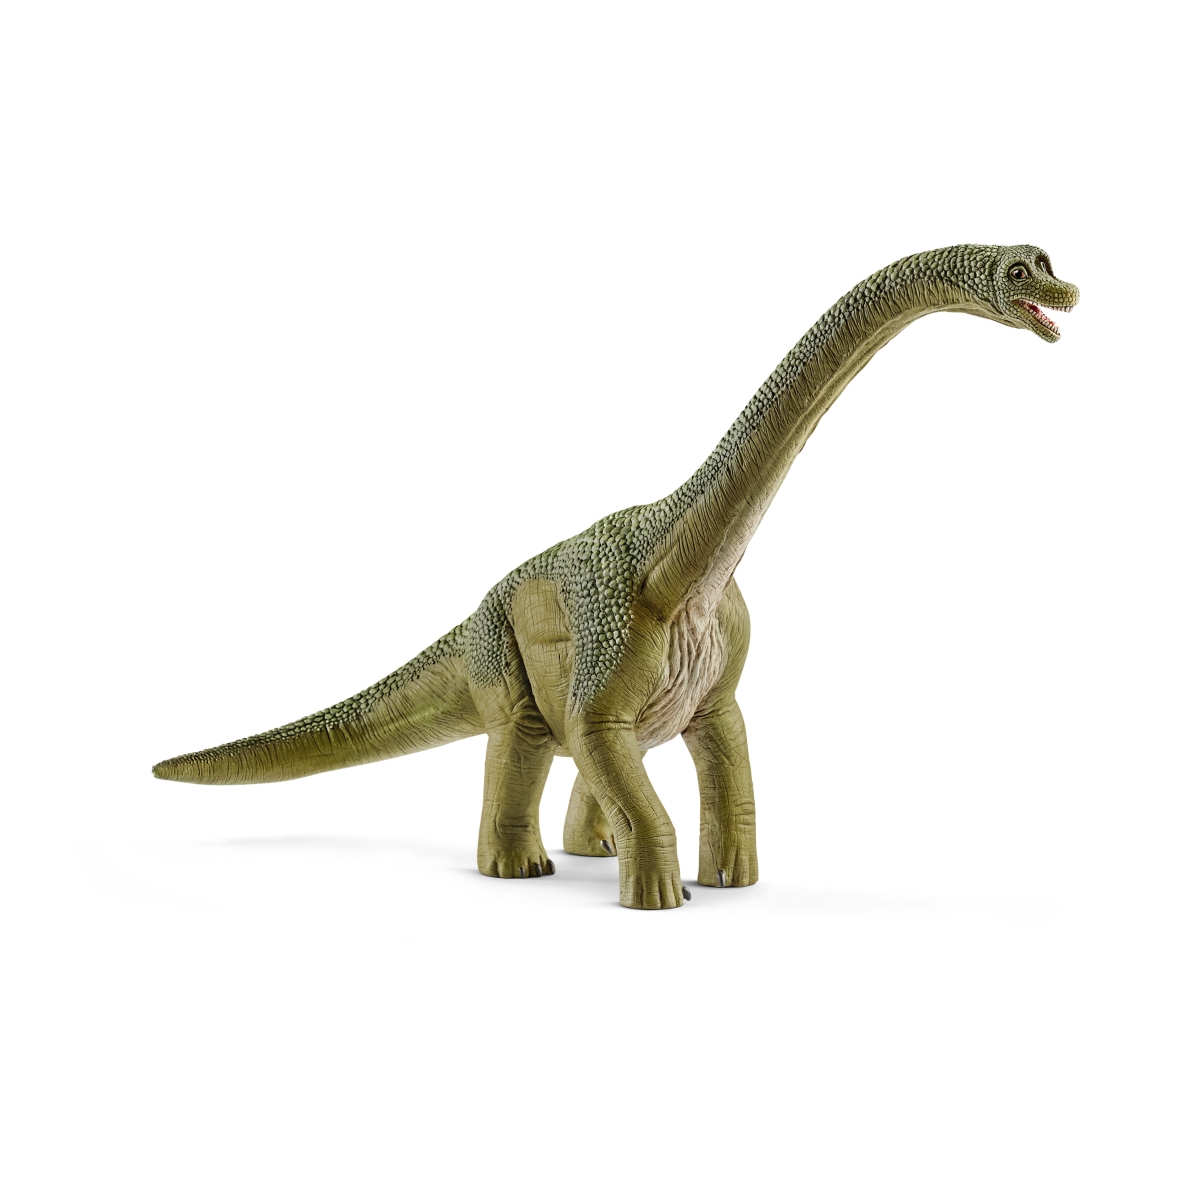 楽天ブックス: 14581 ブラキオサウルス 【シュライヒ】 DINOSAURS/恐竜 